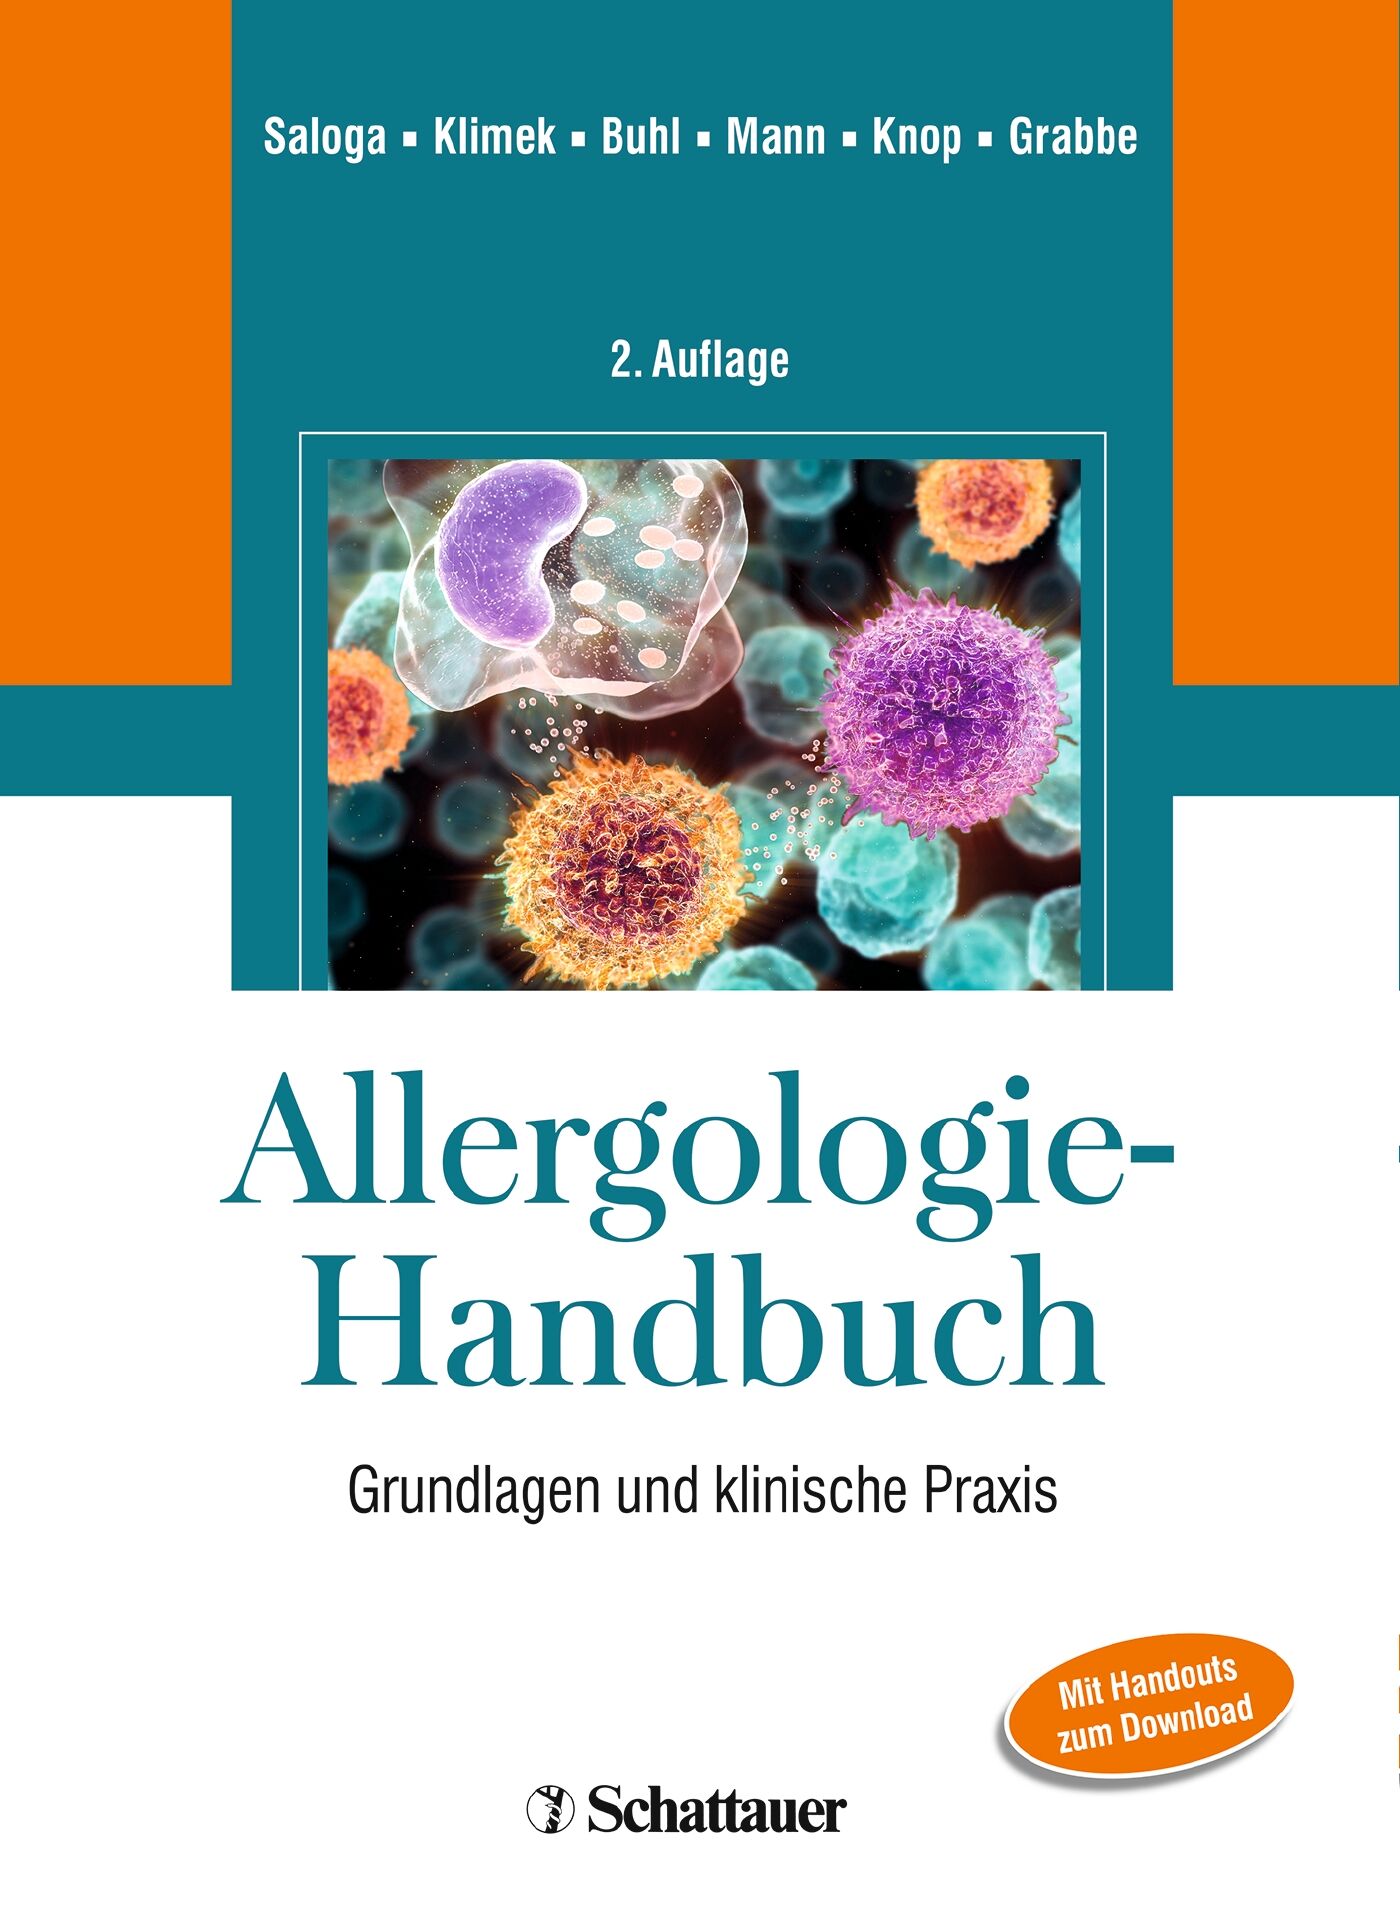 Allergologie-Handbuch, 9783794527298